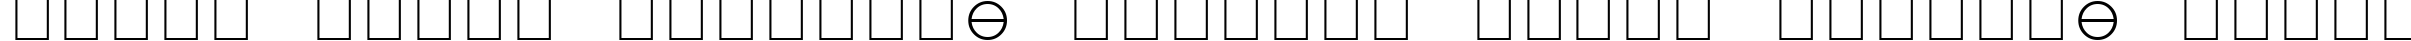 Пример написания шрифтом Lucida Bright Math Symbol текста на белорусском